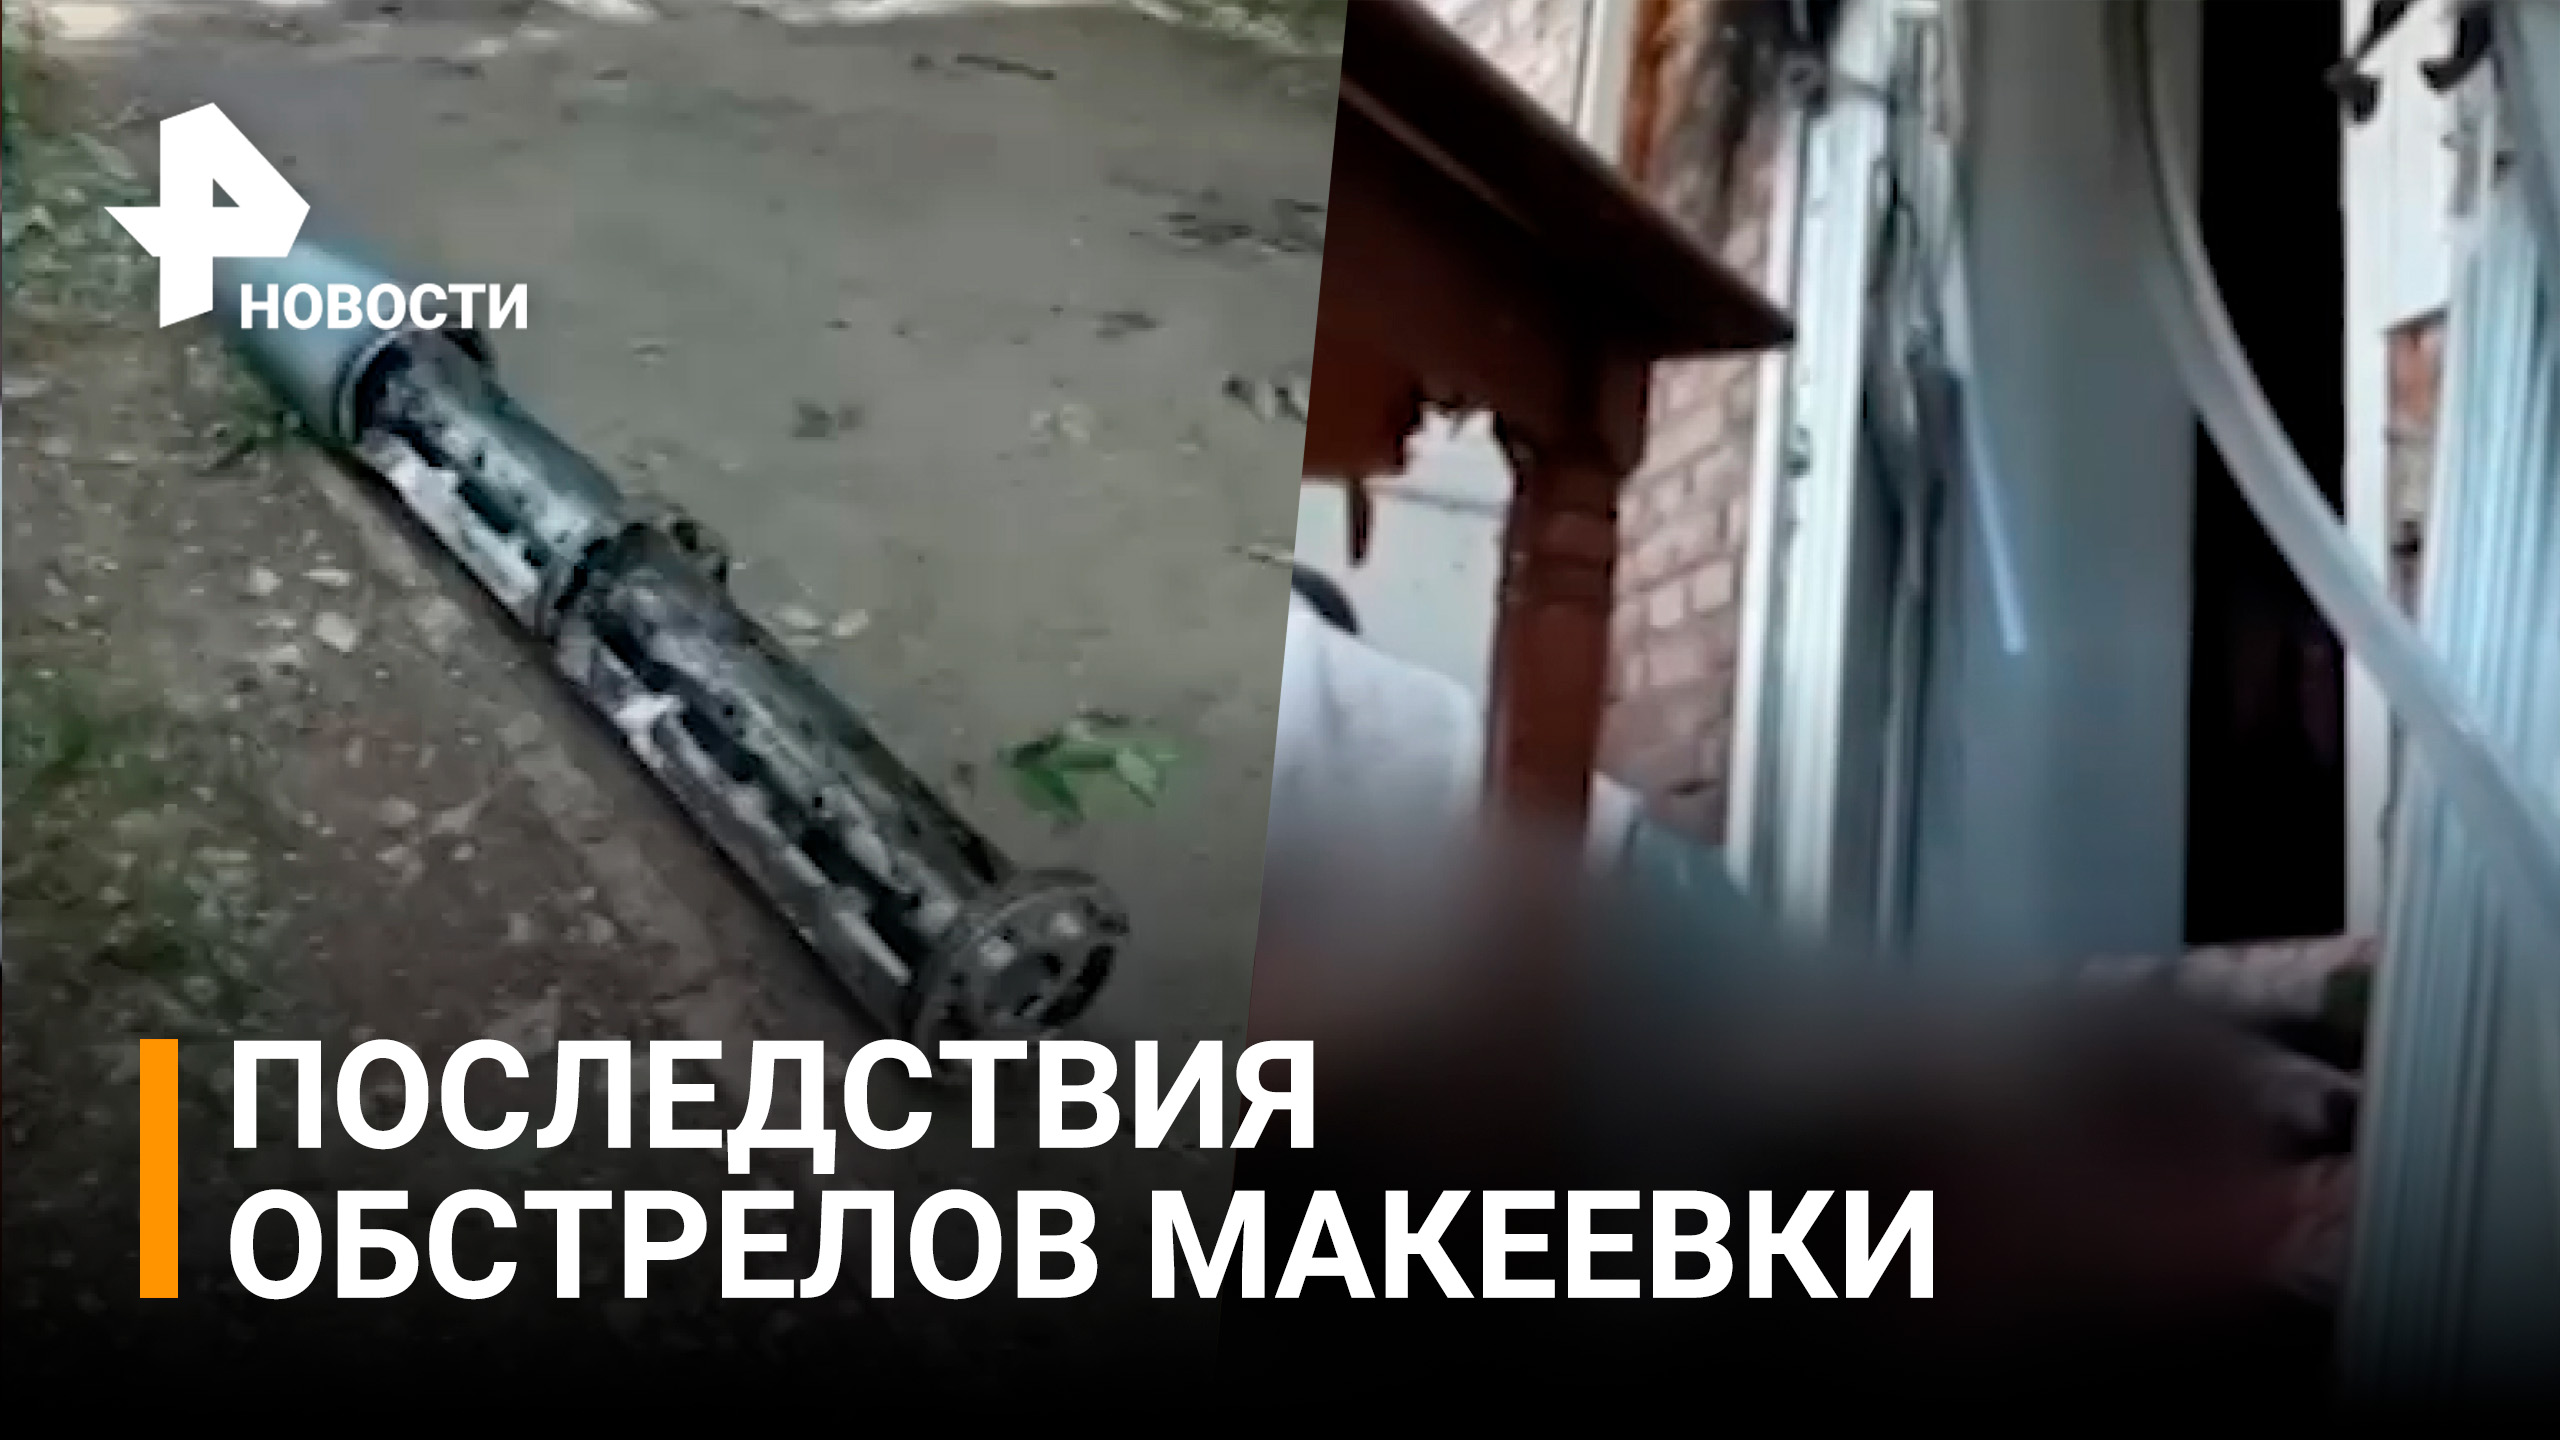 Два человека погибли при обстреле Макеевки со стороны ВСУ / РЕН Новости